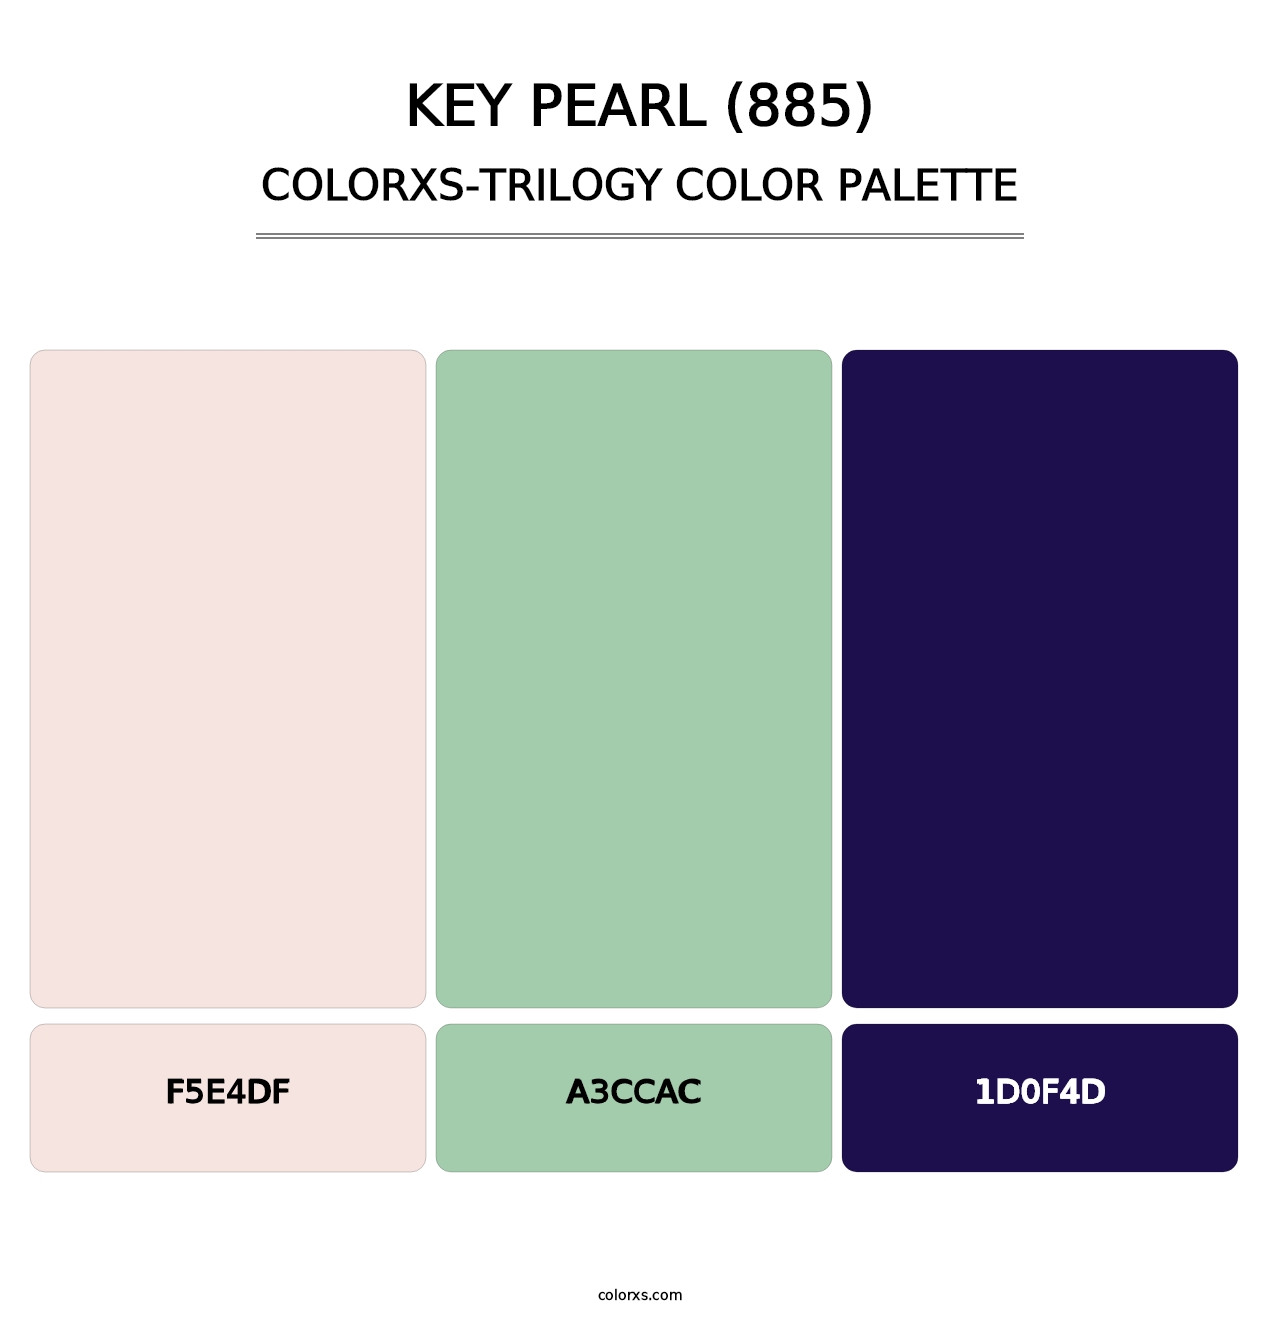 Key Pearl (885) - Colorxs Trilogy Palette